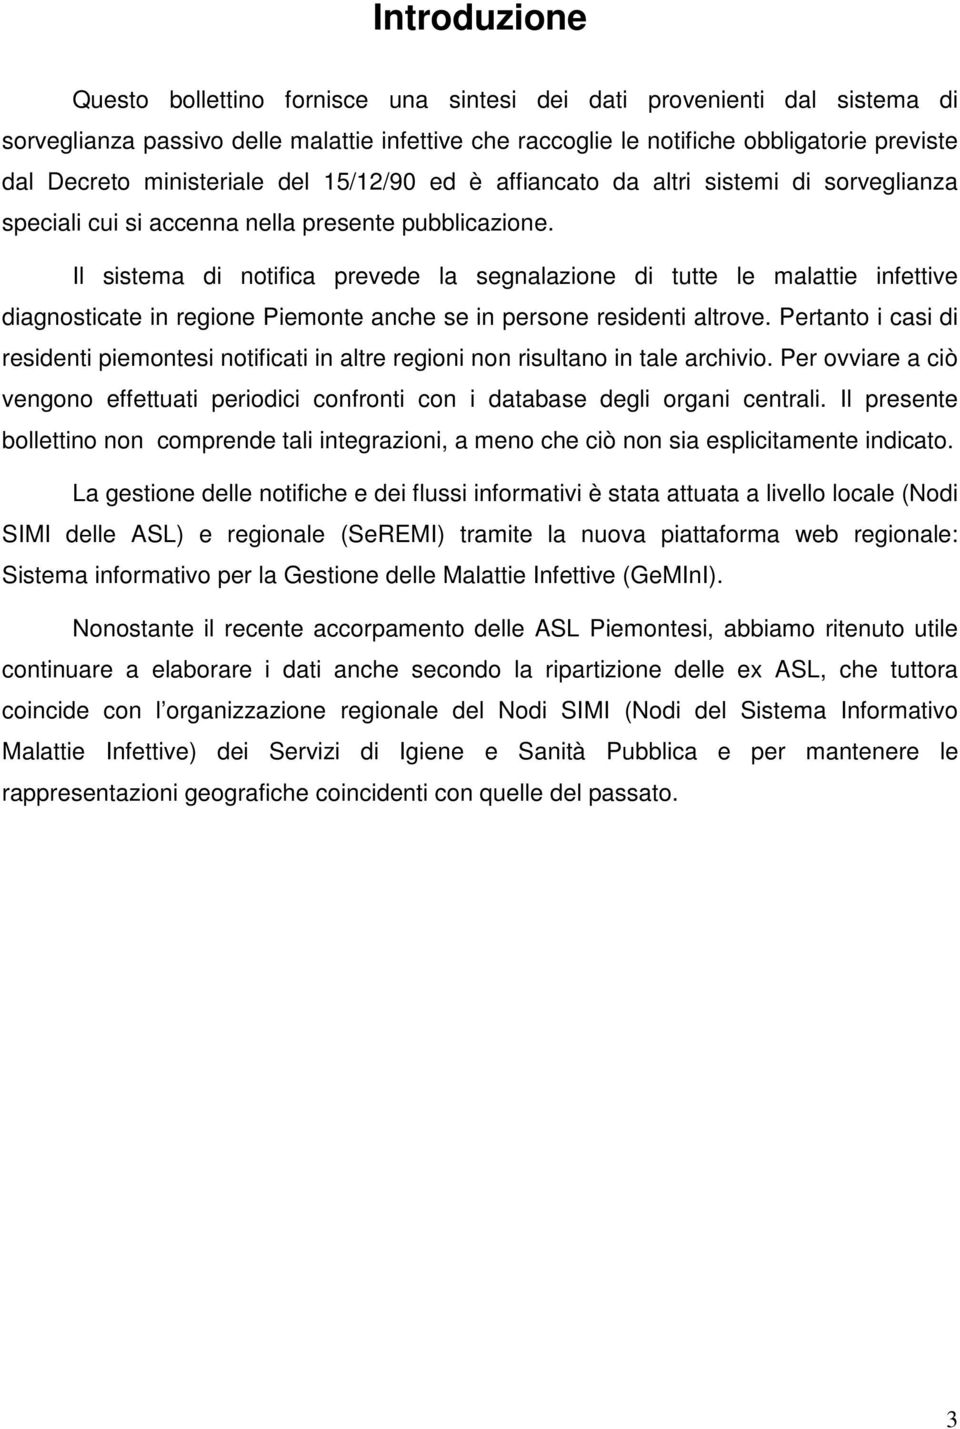 Il sistema di notifica prevede la segnalazione di tutte le malattie infettive diagnosticate in regione Piemonte anche se in persone residenti altrove.